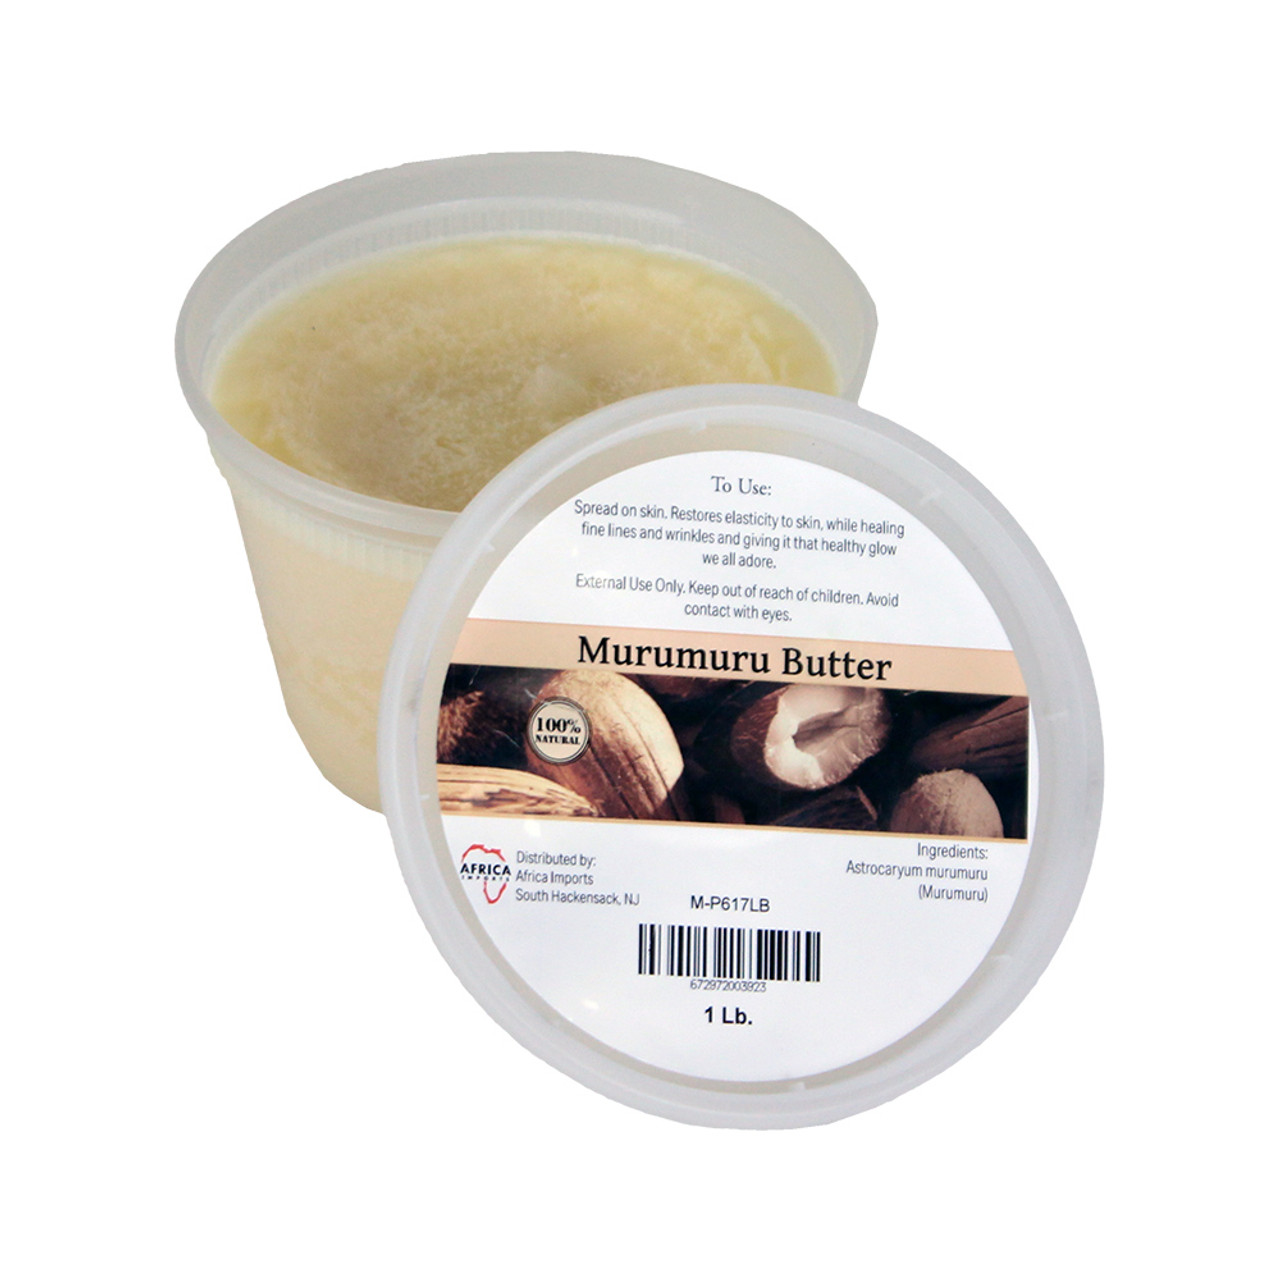 Murumuru Butter - 1 Lb. - Natural Butter - African Health & Beauty